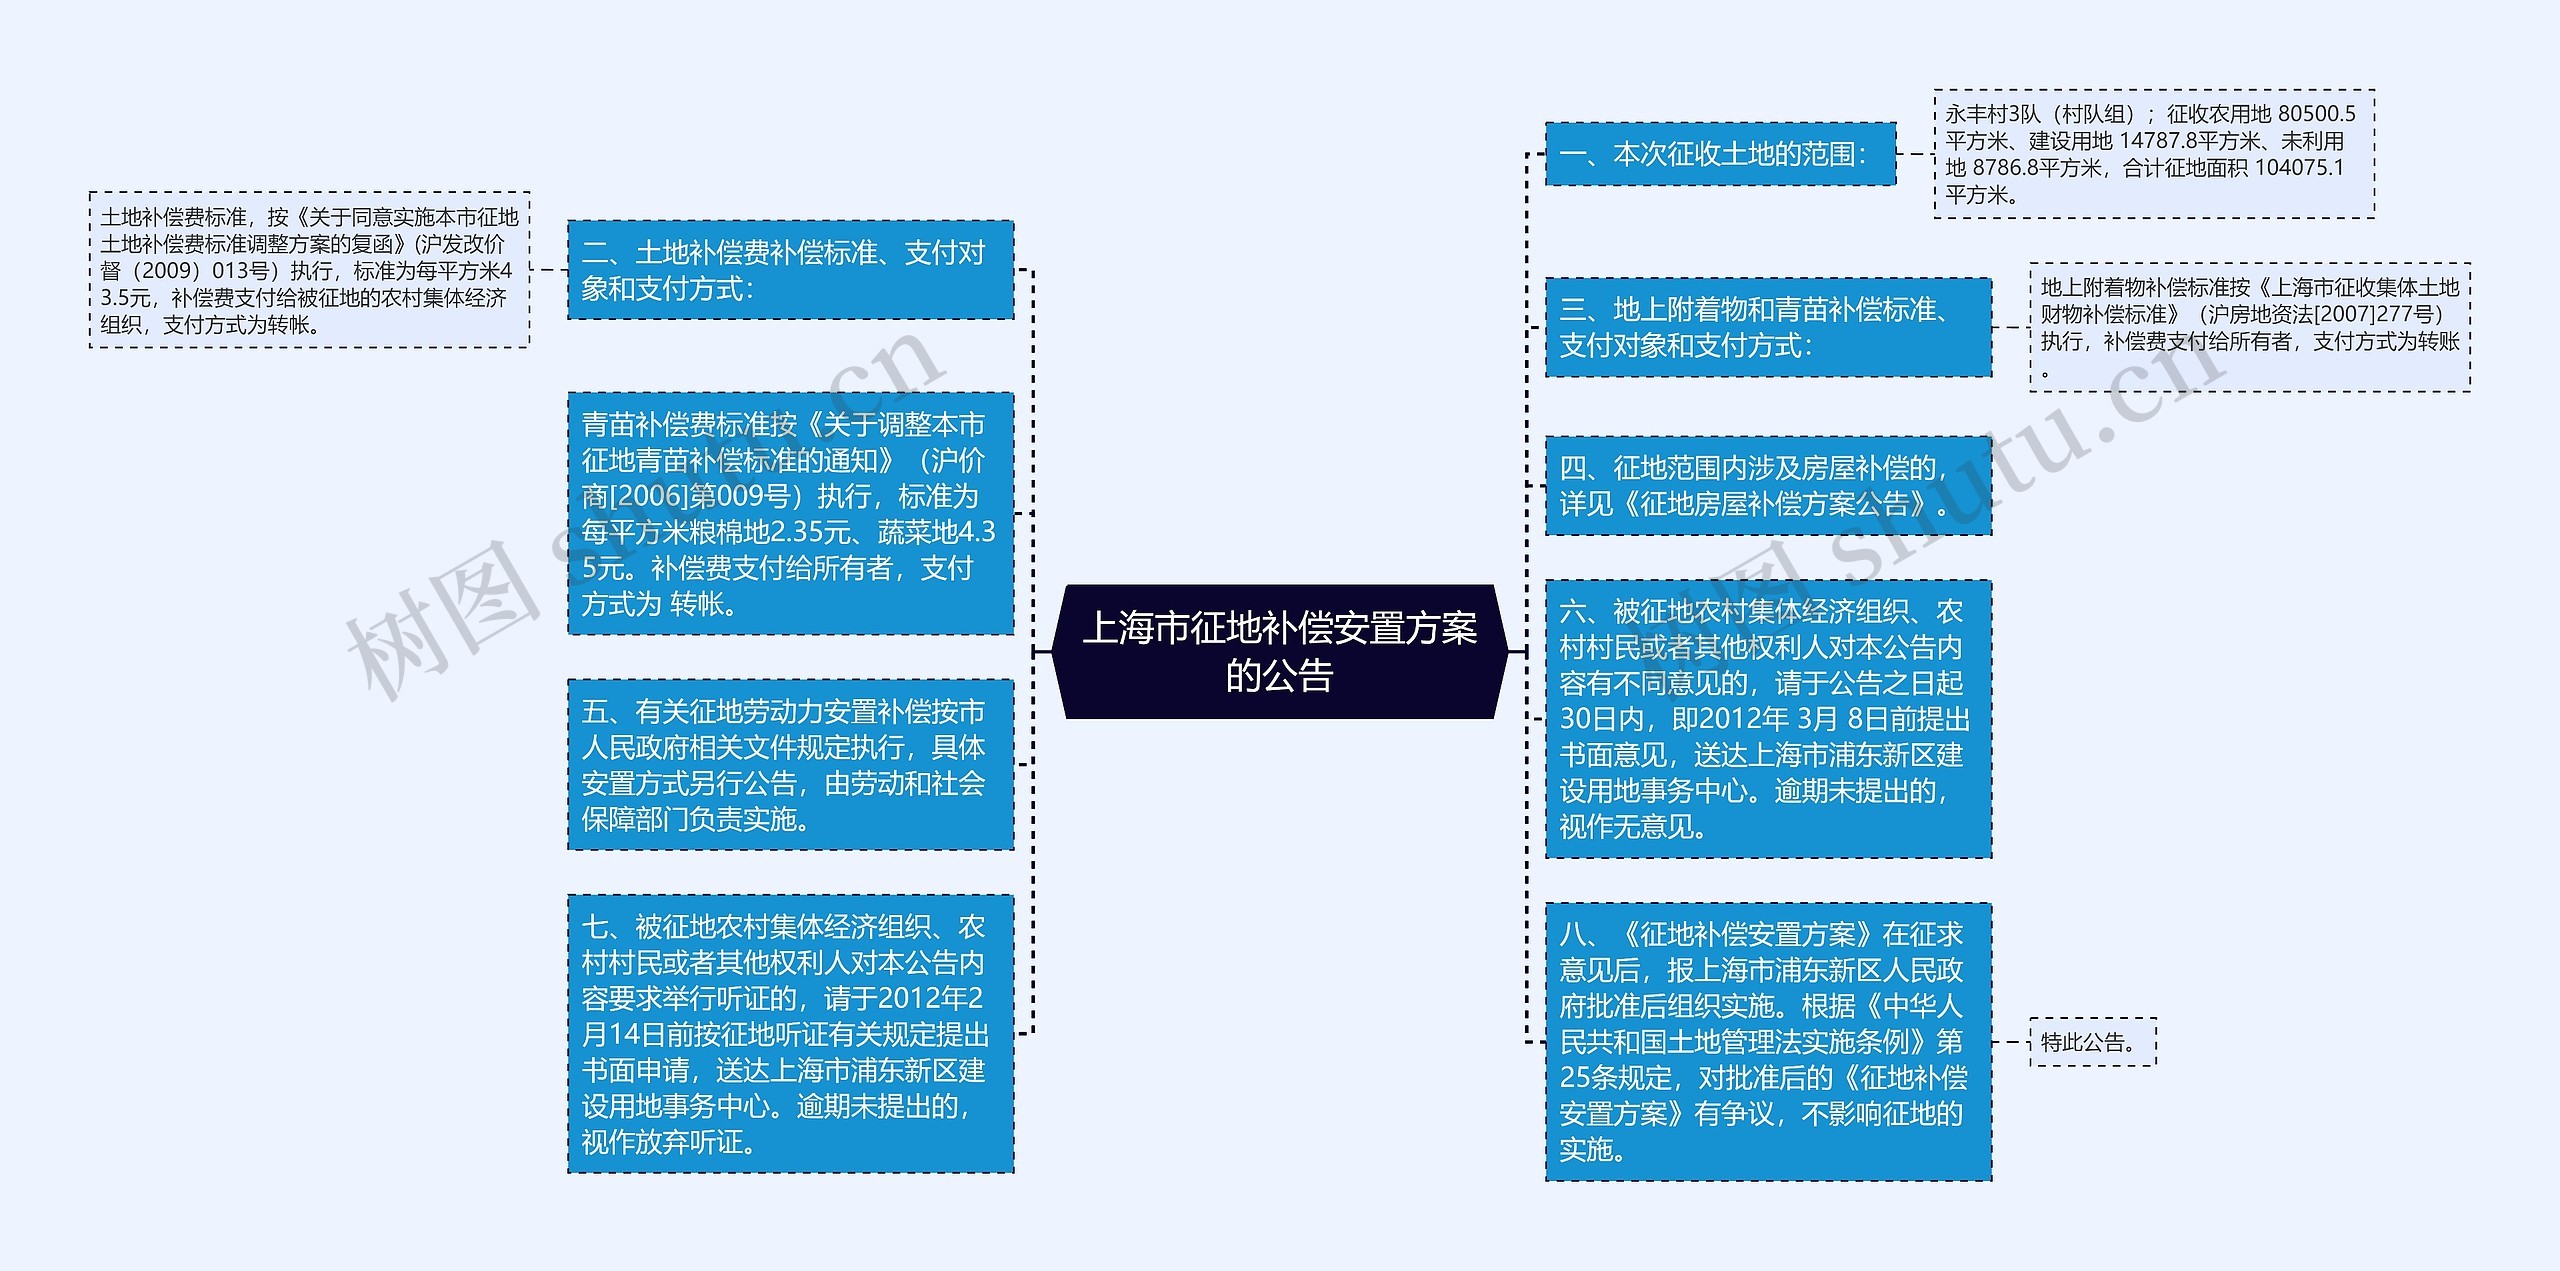 上海市征地补偿安置方案的公告